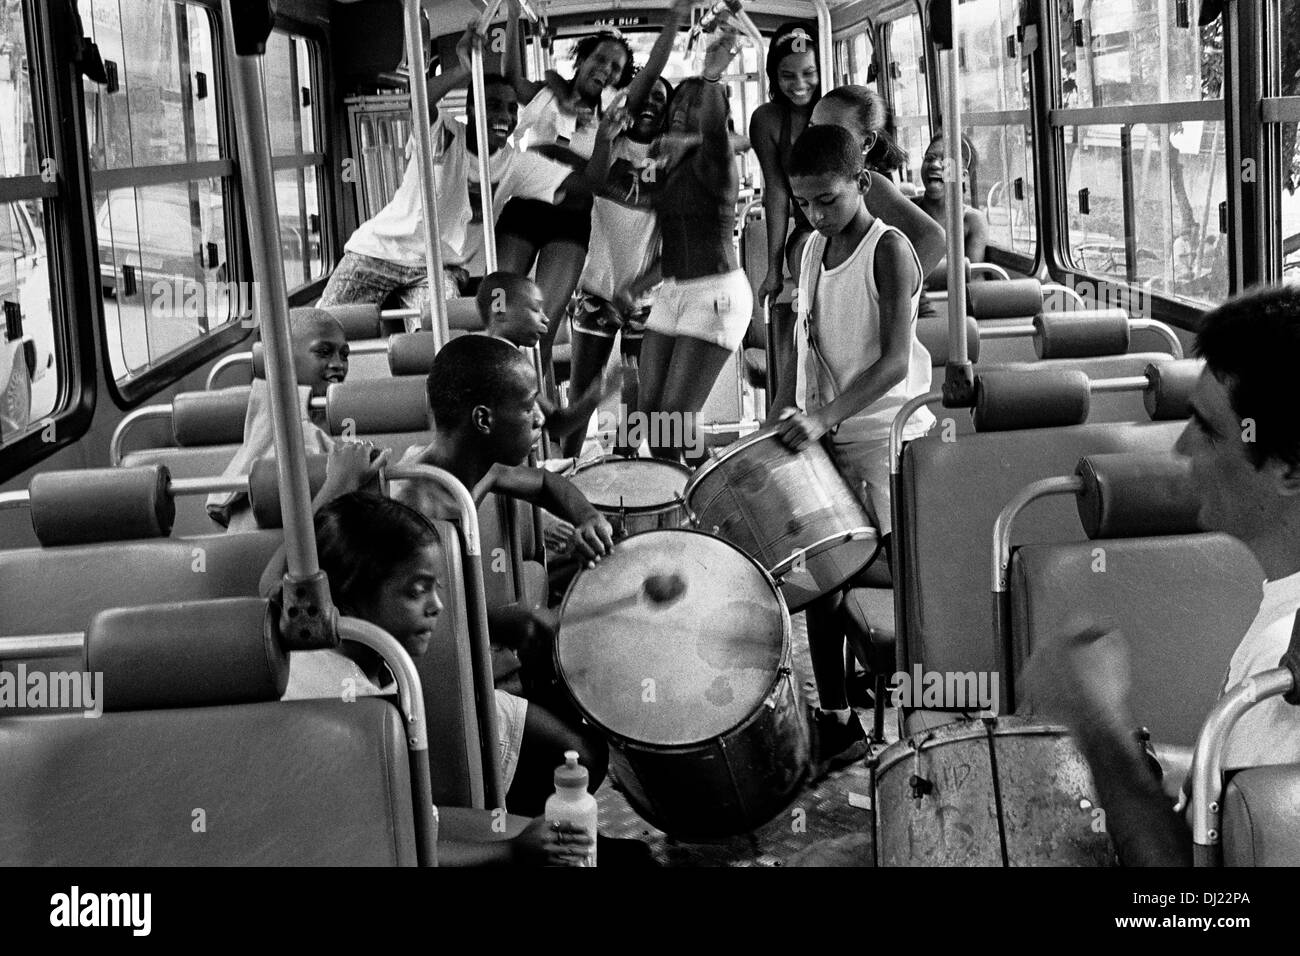 Los jóvenes brasileños bailan samba y tocar la batería en un autobús público en la calle de Río de Janeiro, Brasil. Foto de stock